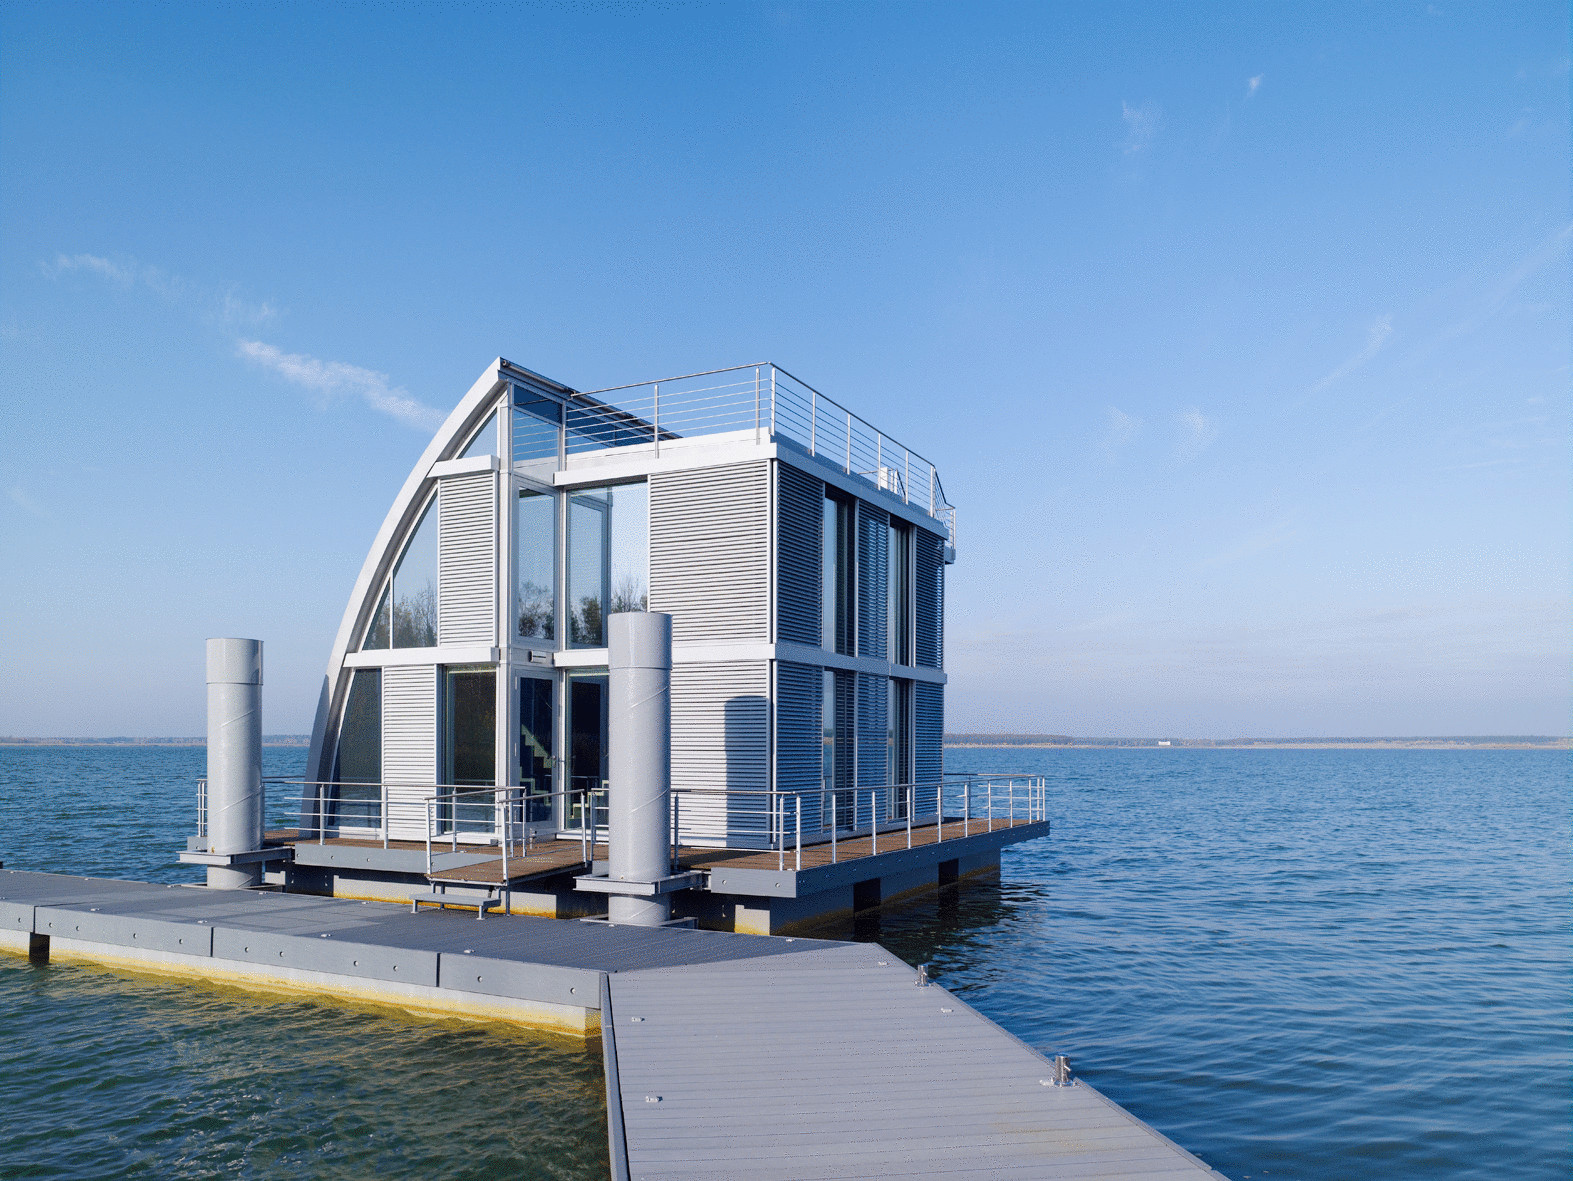 ТОП-3 плавающих домов или обзор водной недвижимости будущего 